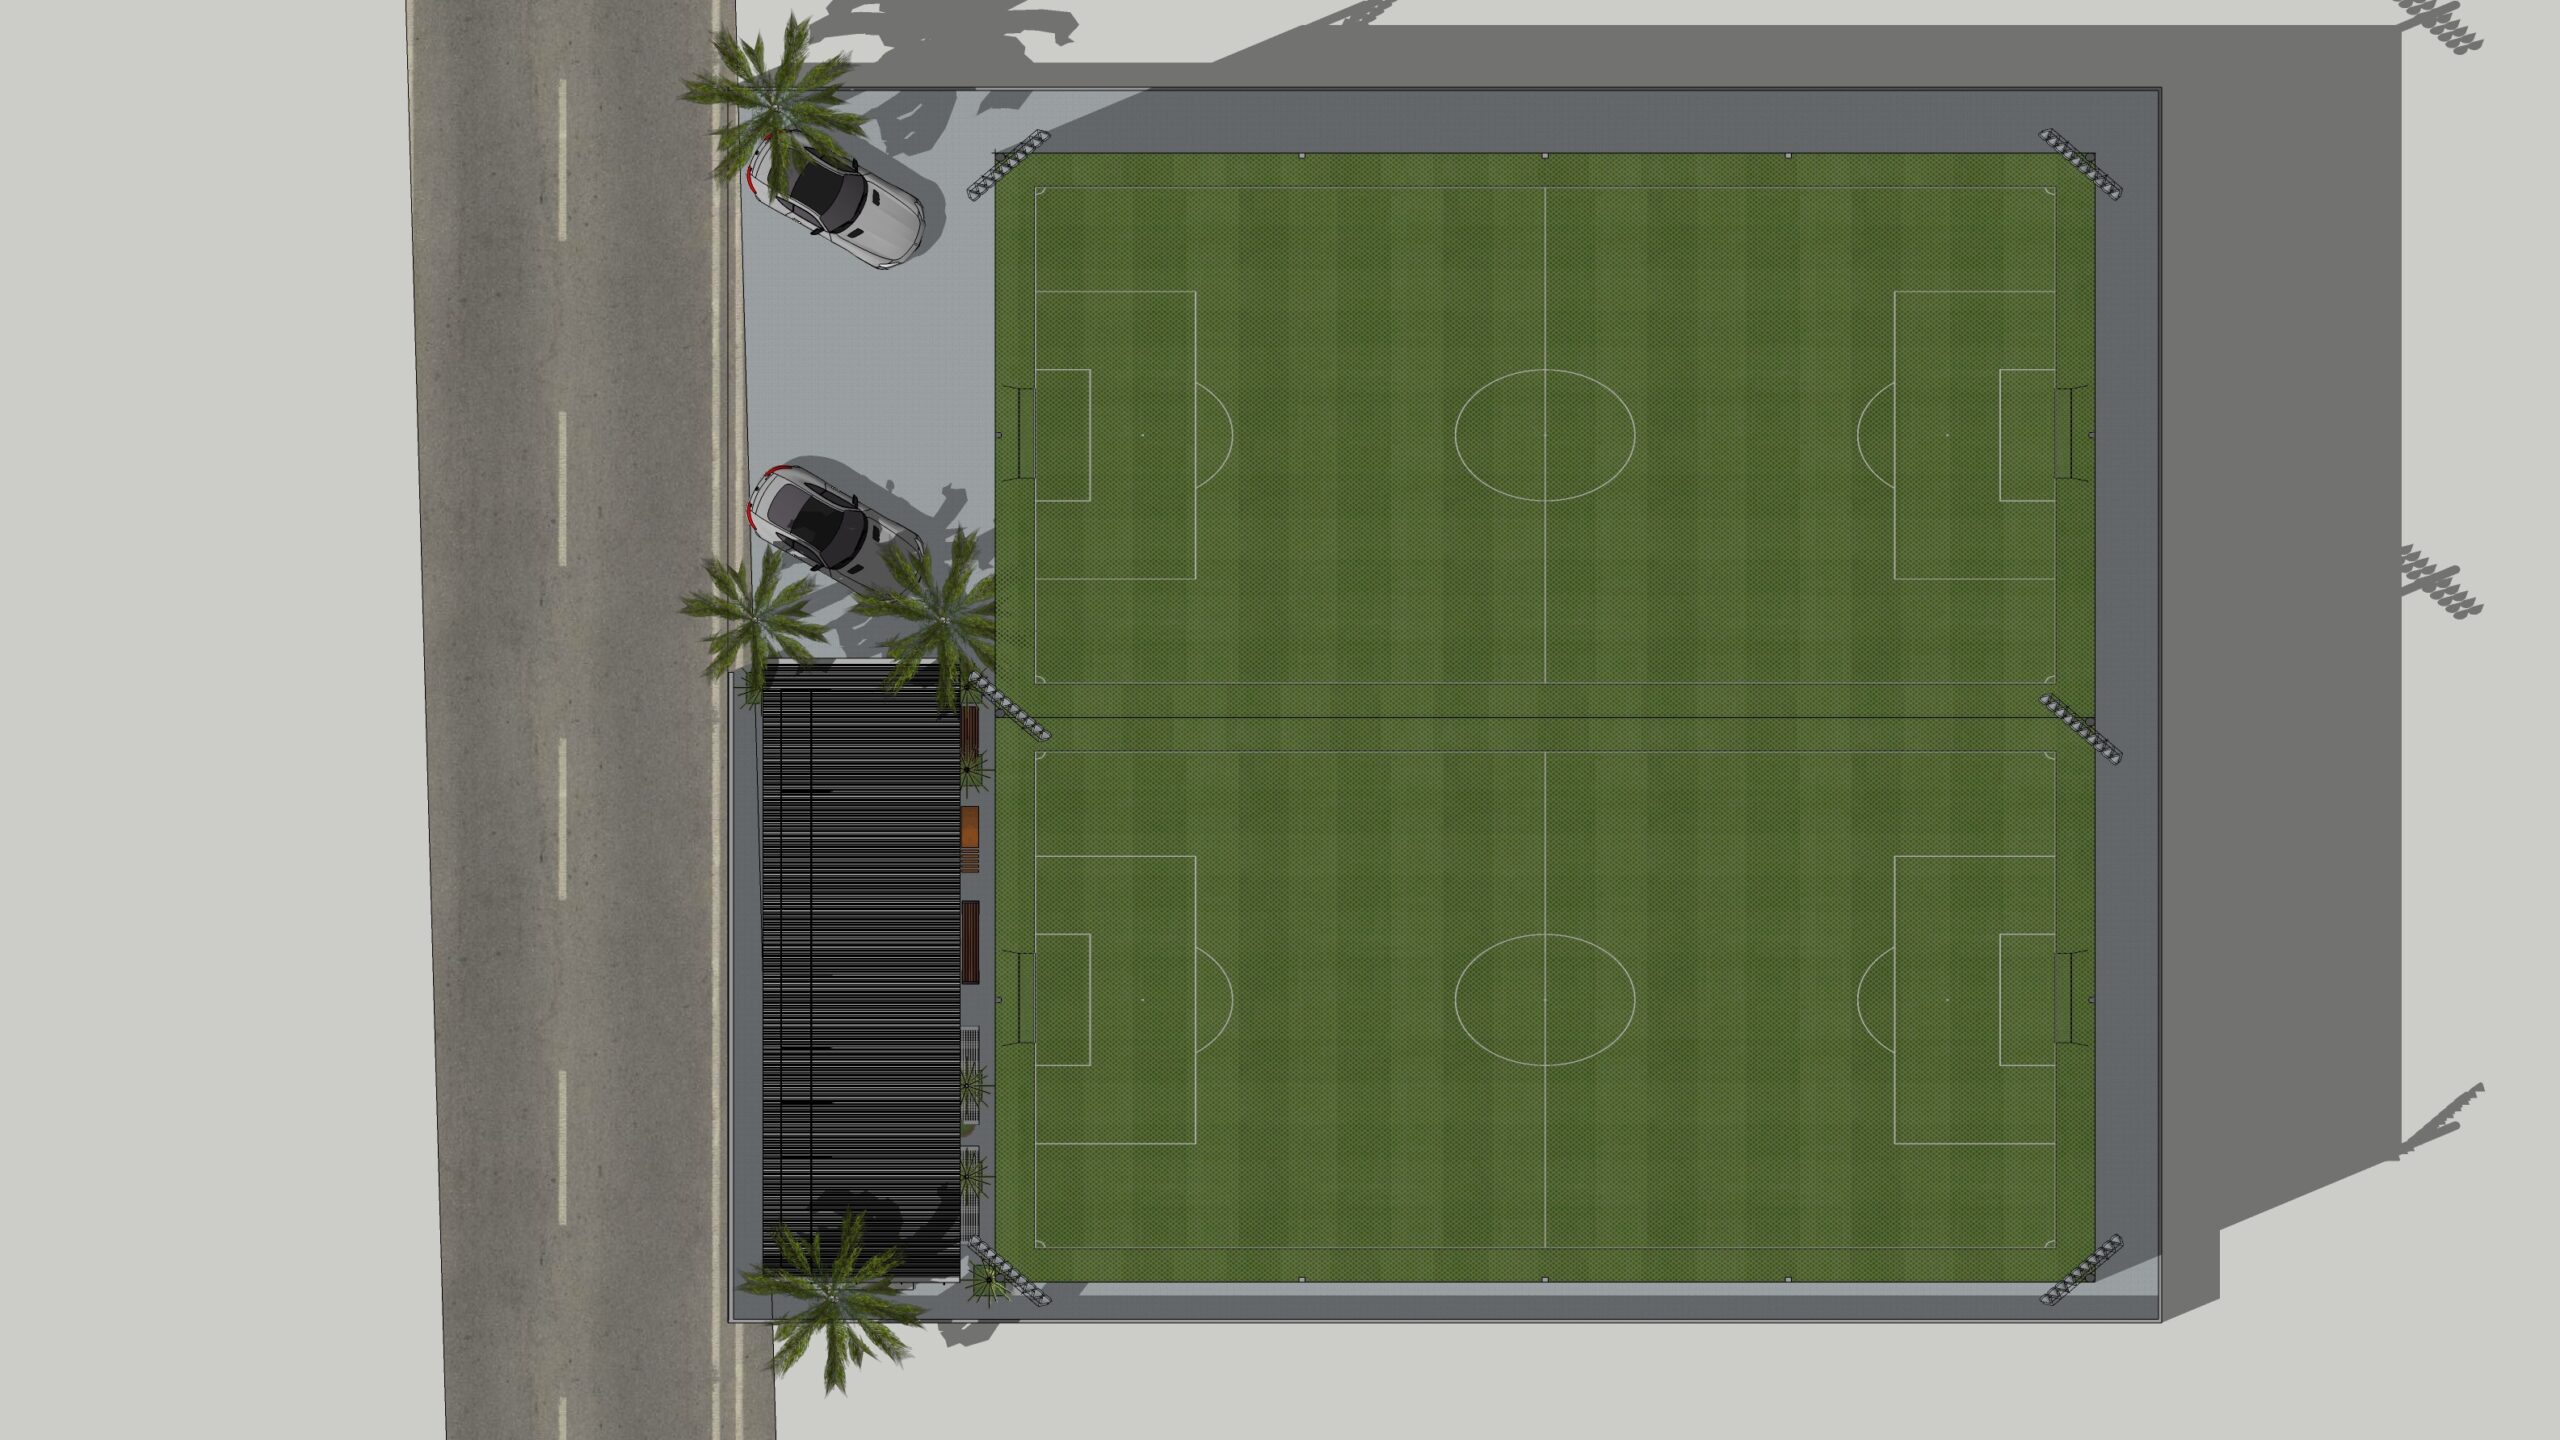 สนามฟุตบอลหญ้าเทียม 7 คน ขนาดต่างๆ ที่เหมาะกับการทำธุรกิจสนามฟุตบอลให้เช่า  - รับสร้างสนามฟุตบอลหญ้าเทียม รับปูหญ้าเทียม : รับสร้างสนามฟุตบอลหญ้าเทียม  รับปูหญ้าเทียม